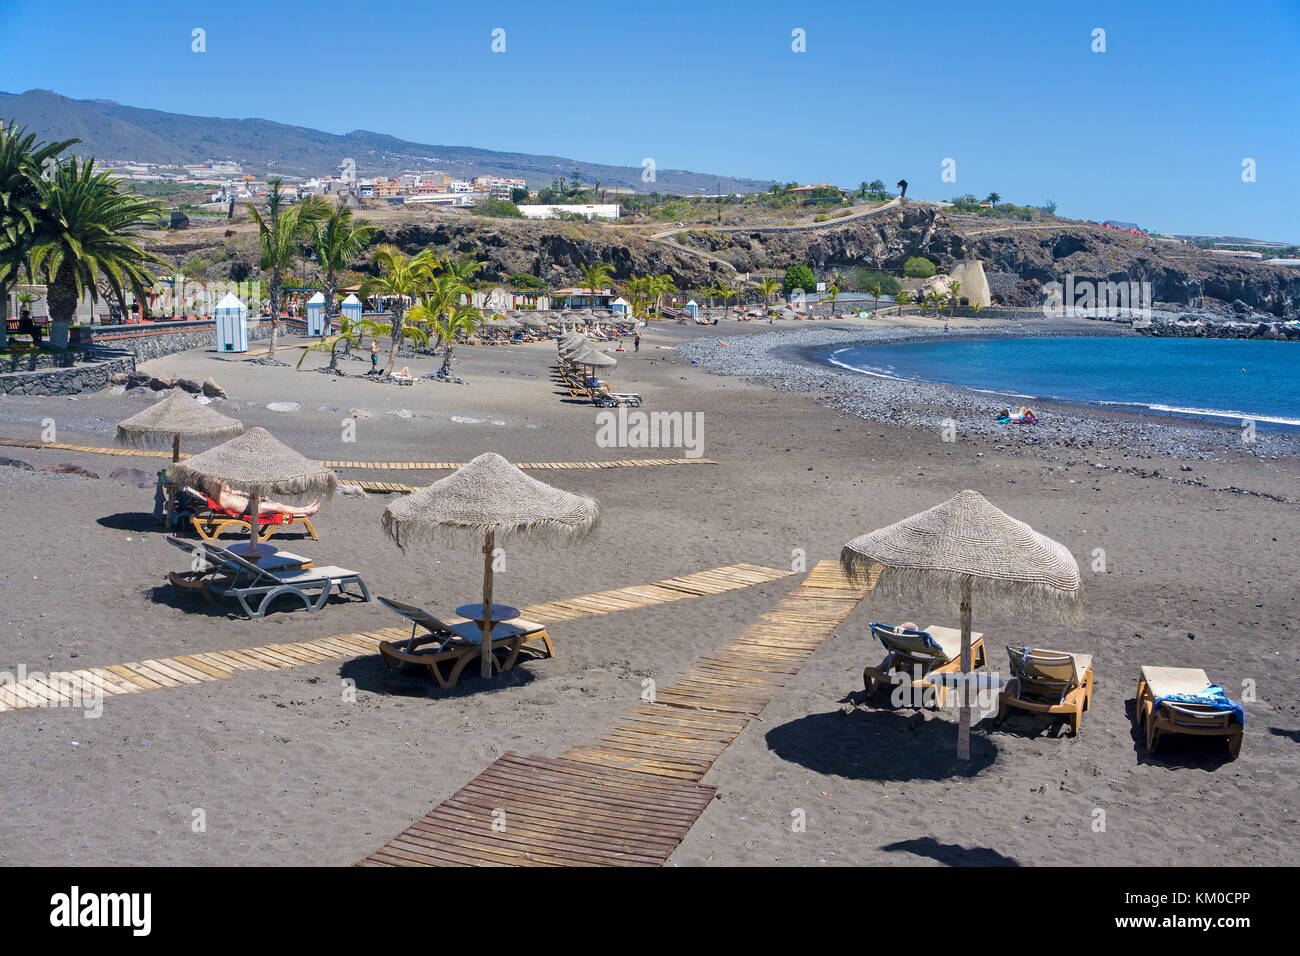 Playa San Juan, plage de la côte ouest de l'île, l'île de Tenerife, Canaries, Espagne Banque D'Images